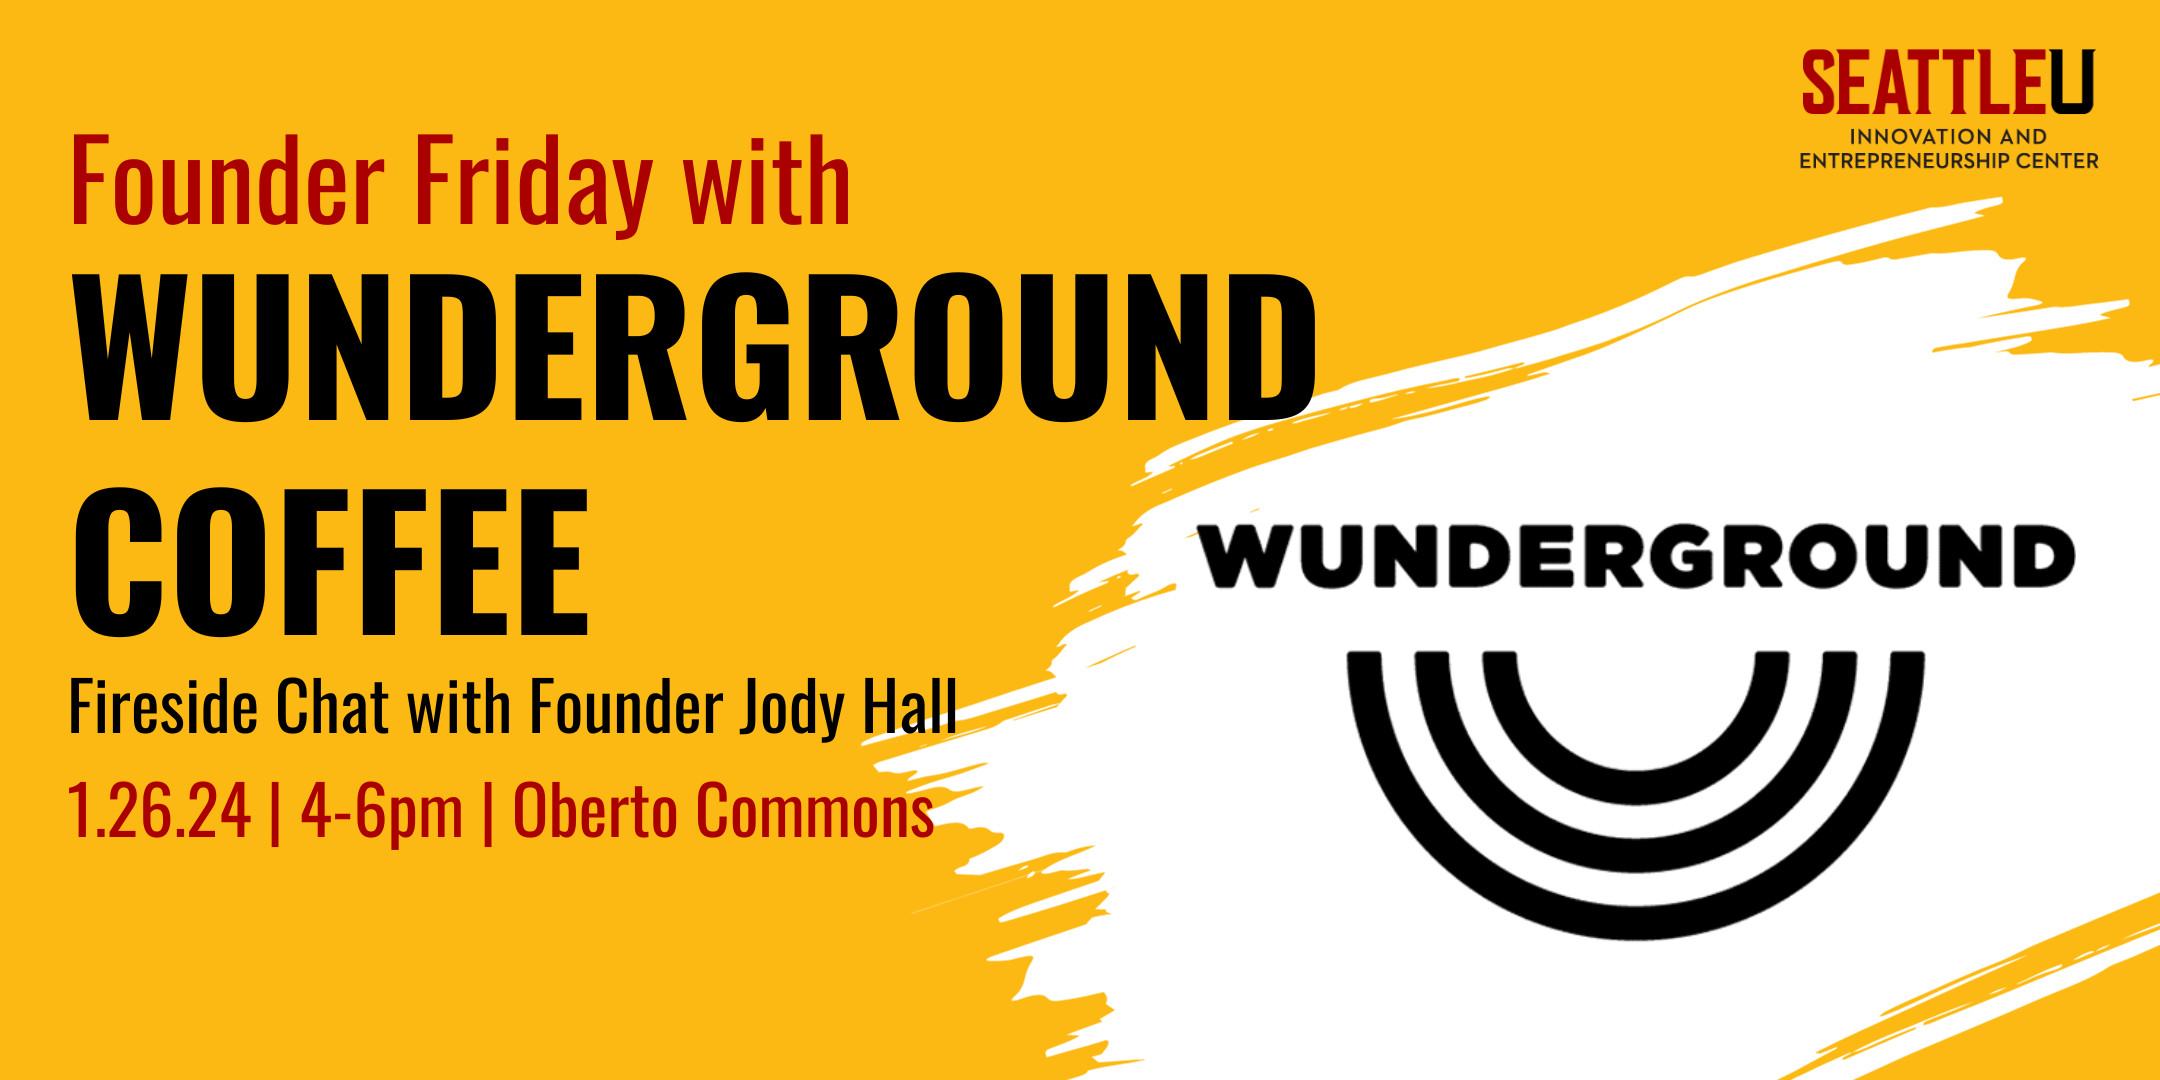 Wunderground - Founder Friday